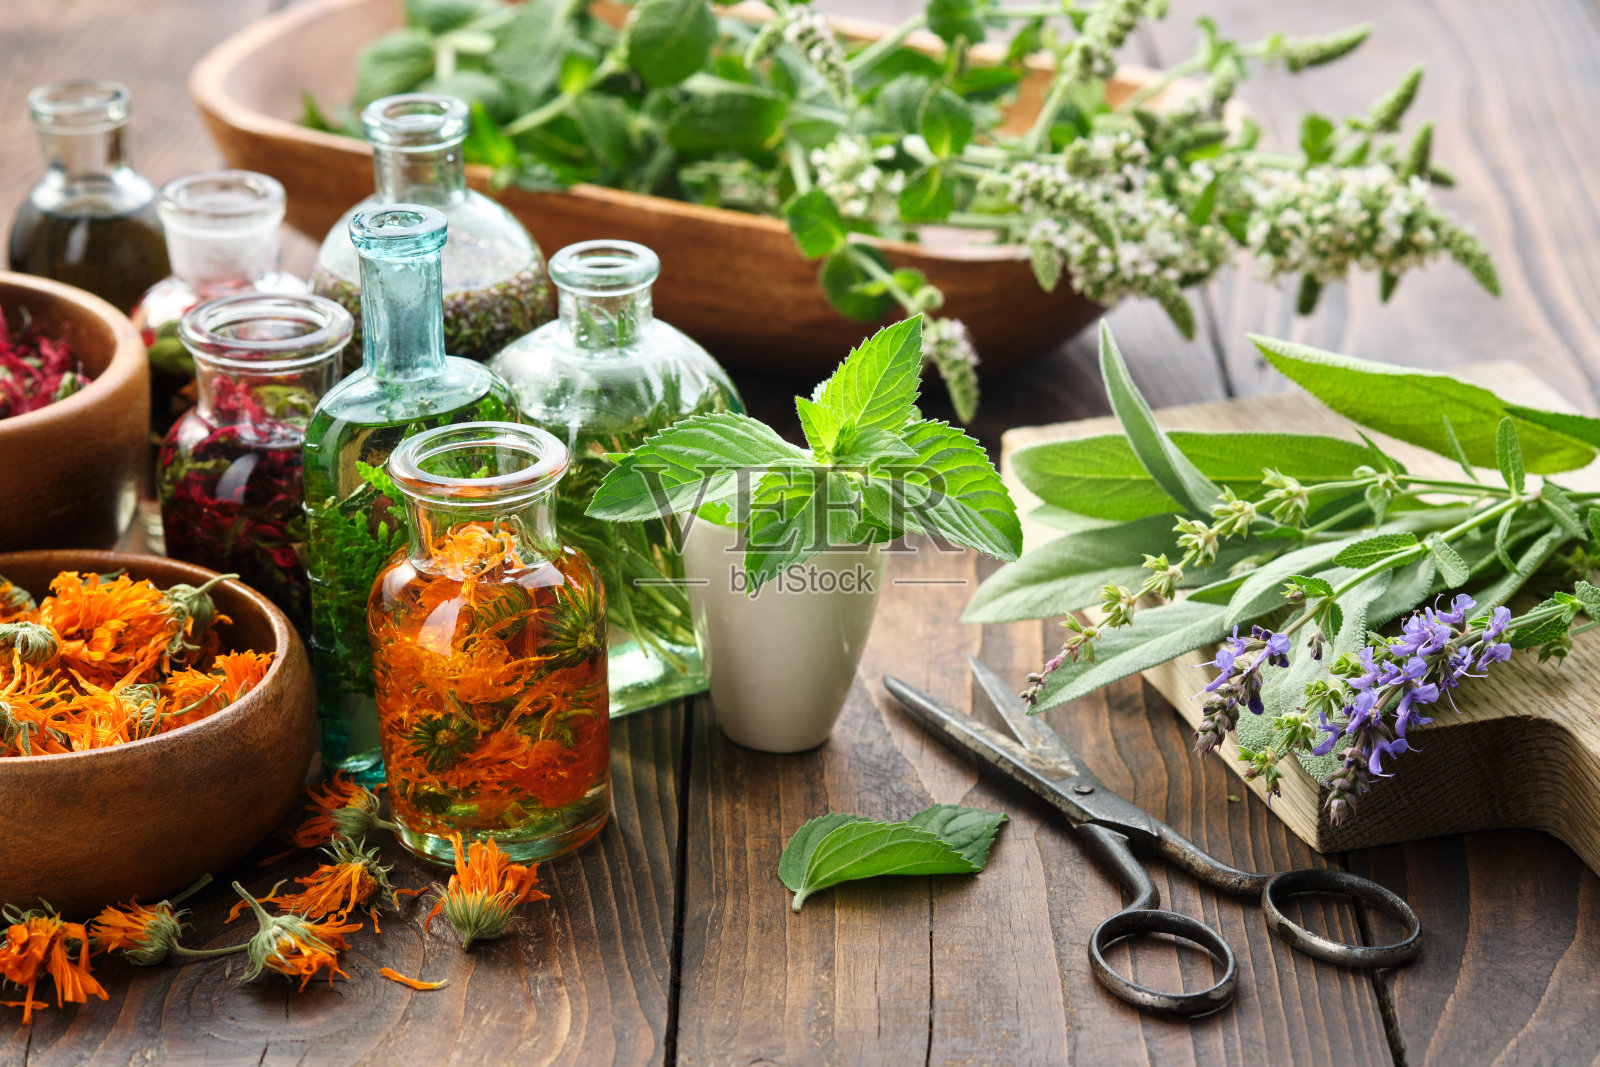 木桌上摆放着金盏花、薄荷、鼠尾草、牛至、愈合植物和药草等精油或药草和浆果的瓶子。替代医学。照片摄影图片